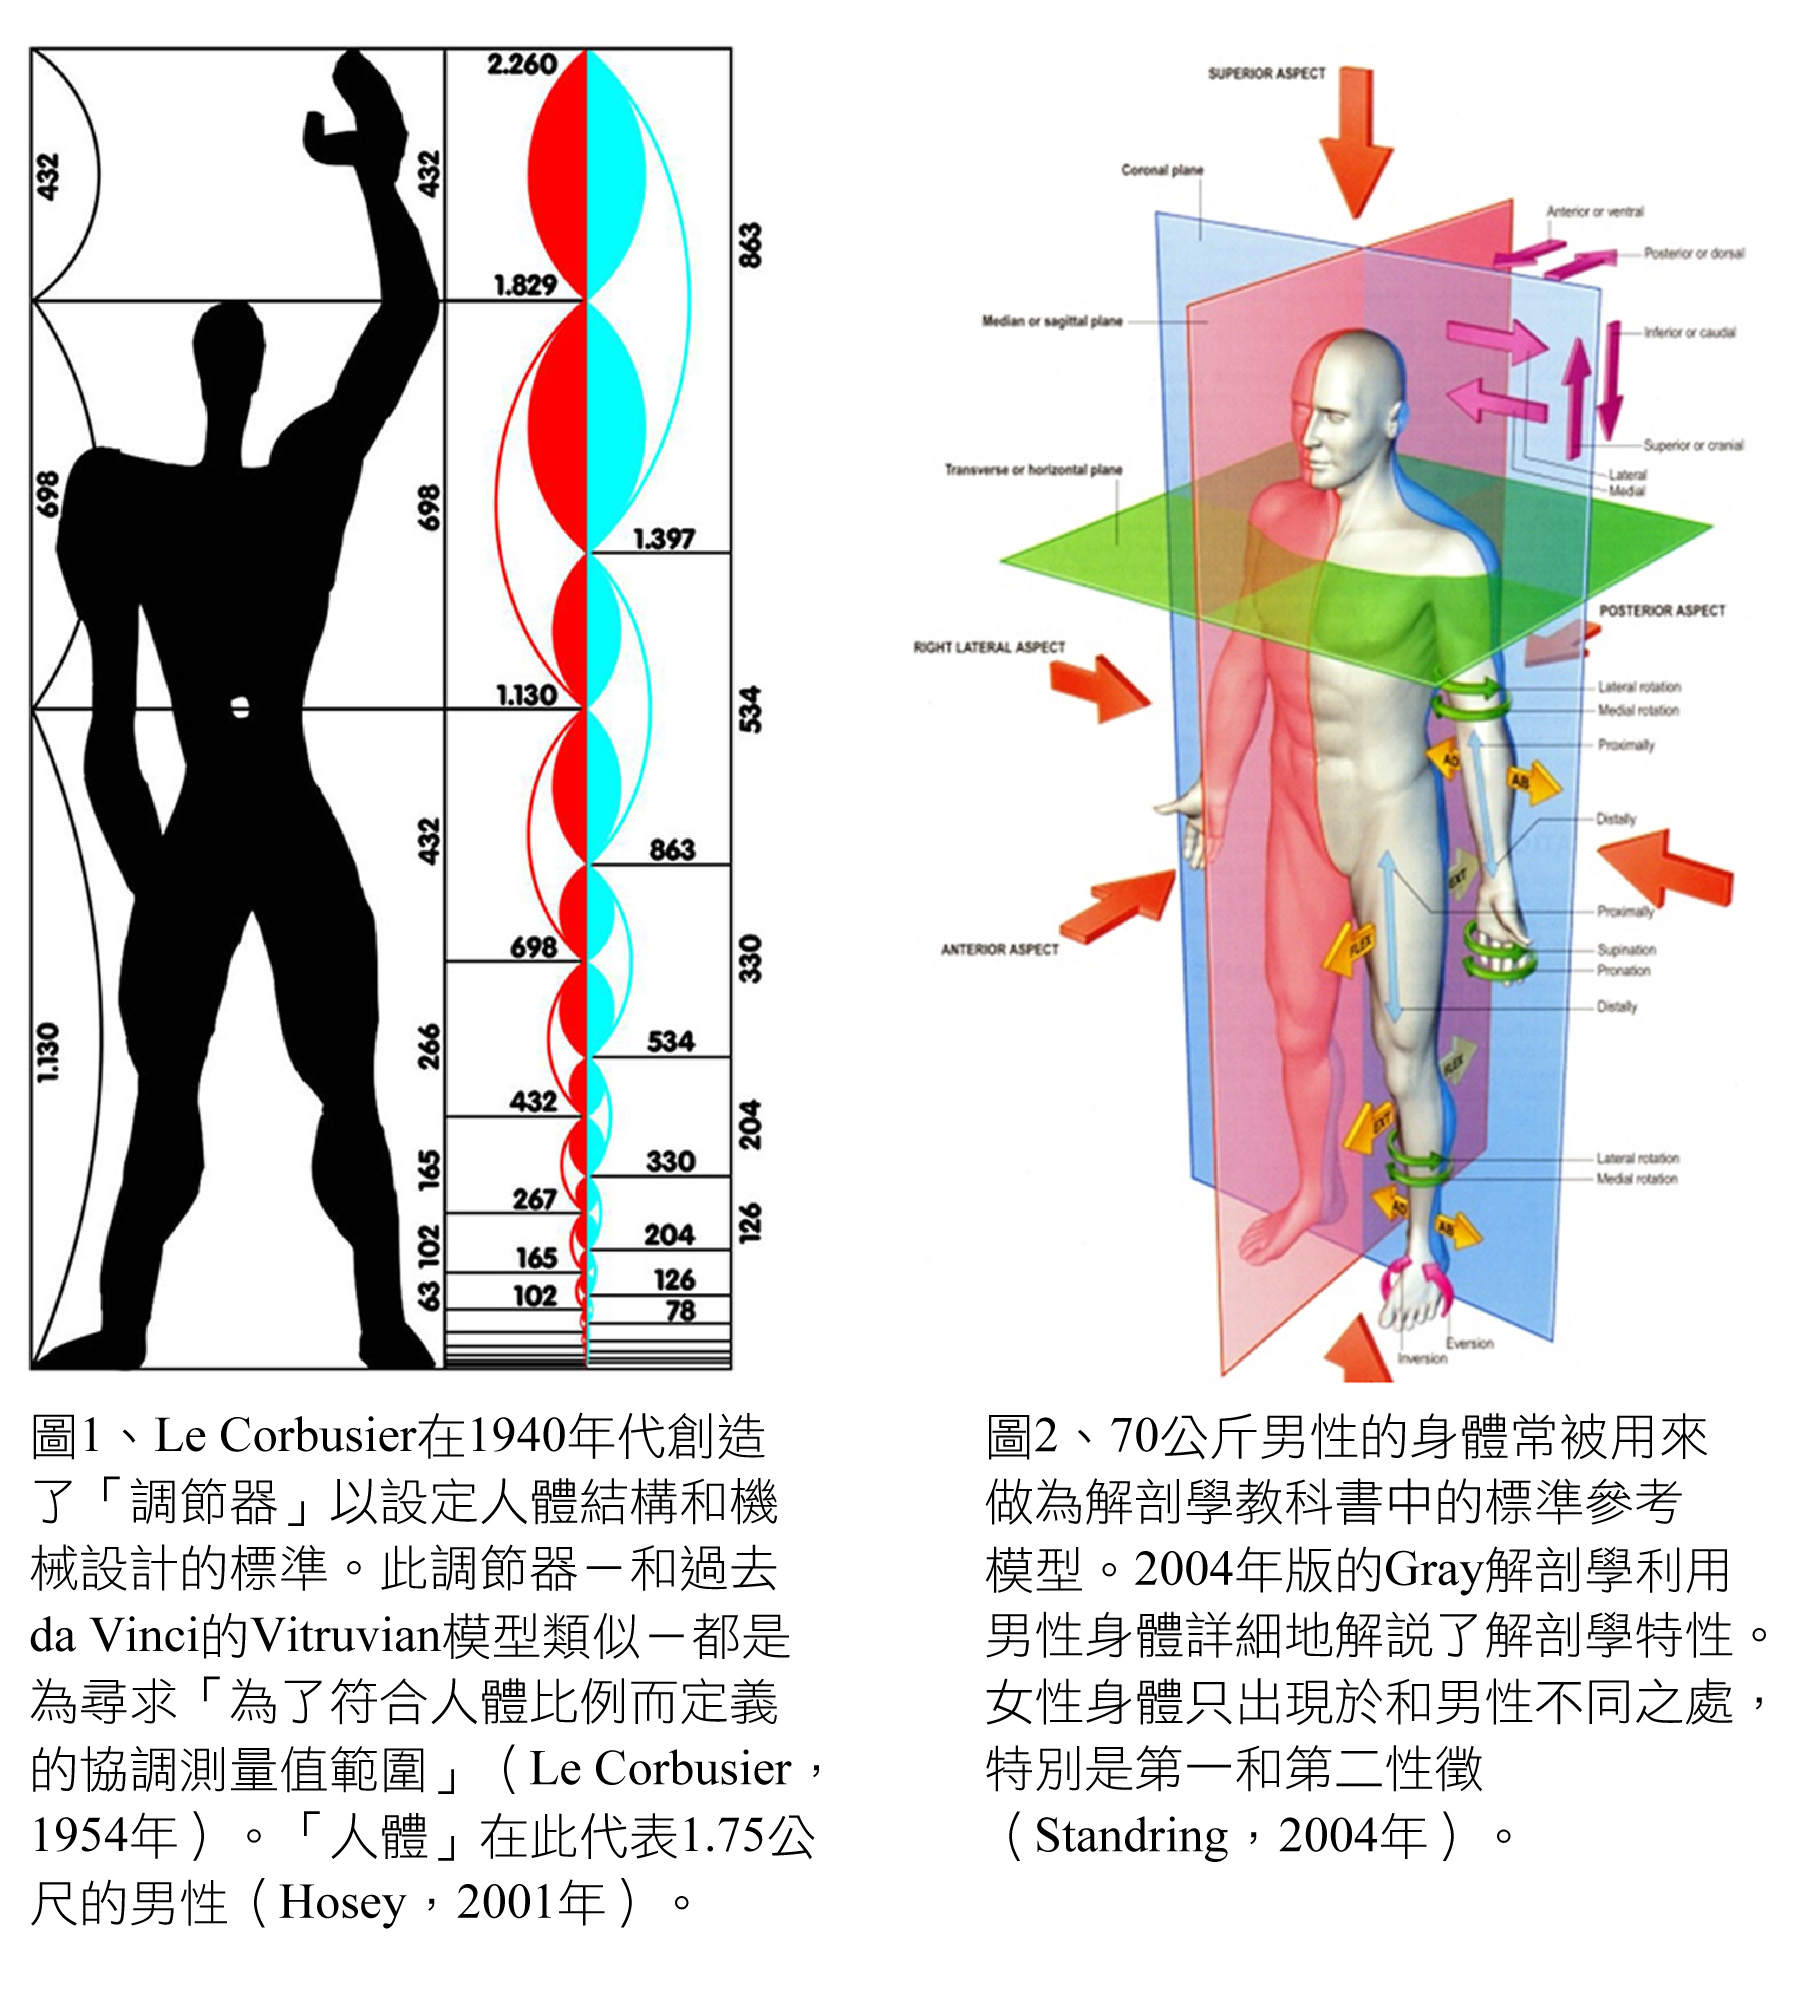 Le Corbusier Modulator and Gray's anatomy male body